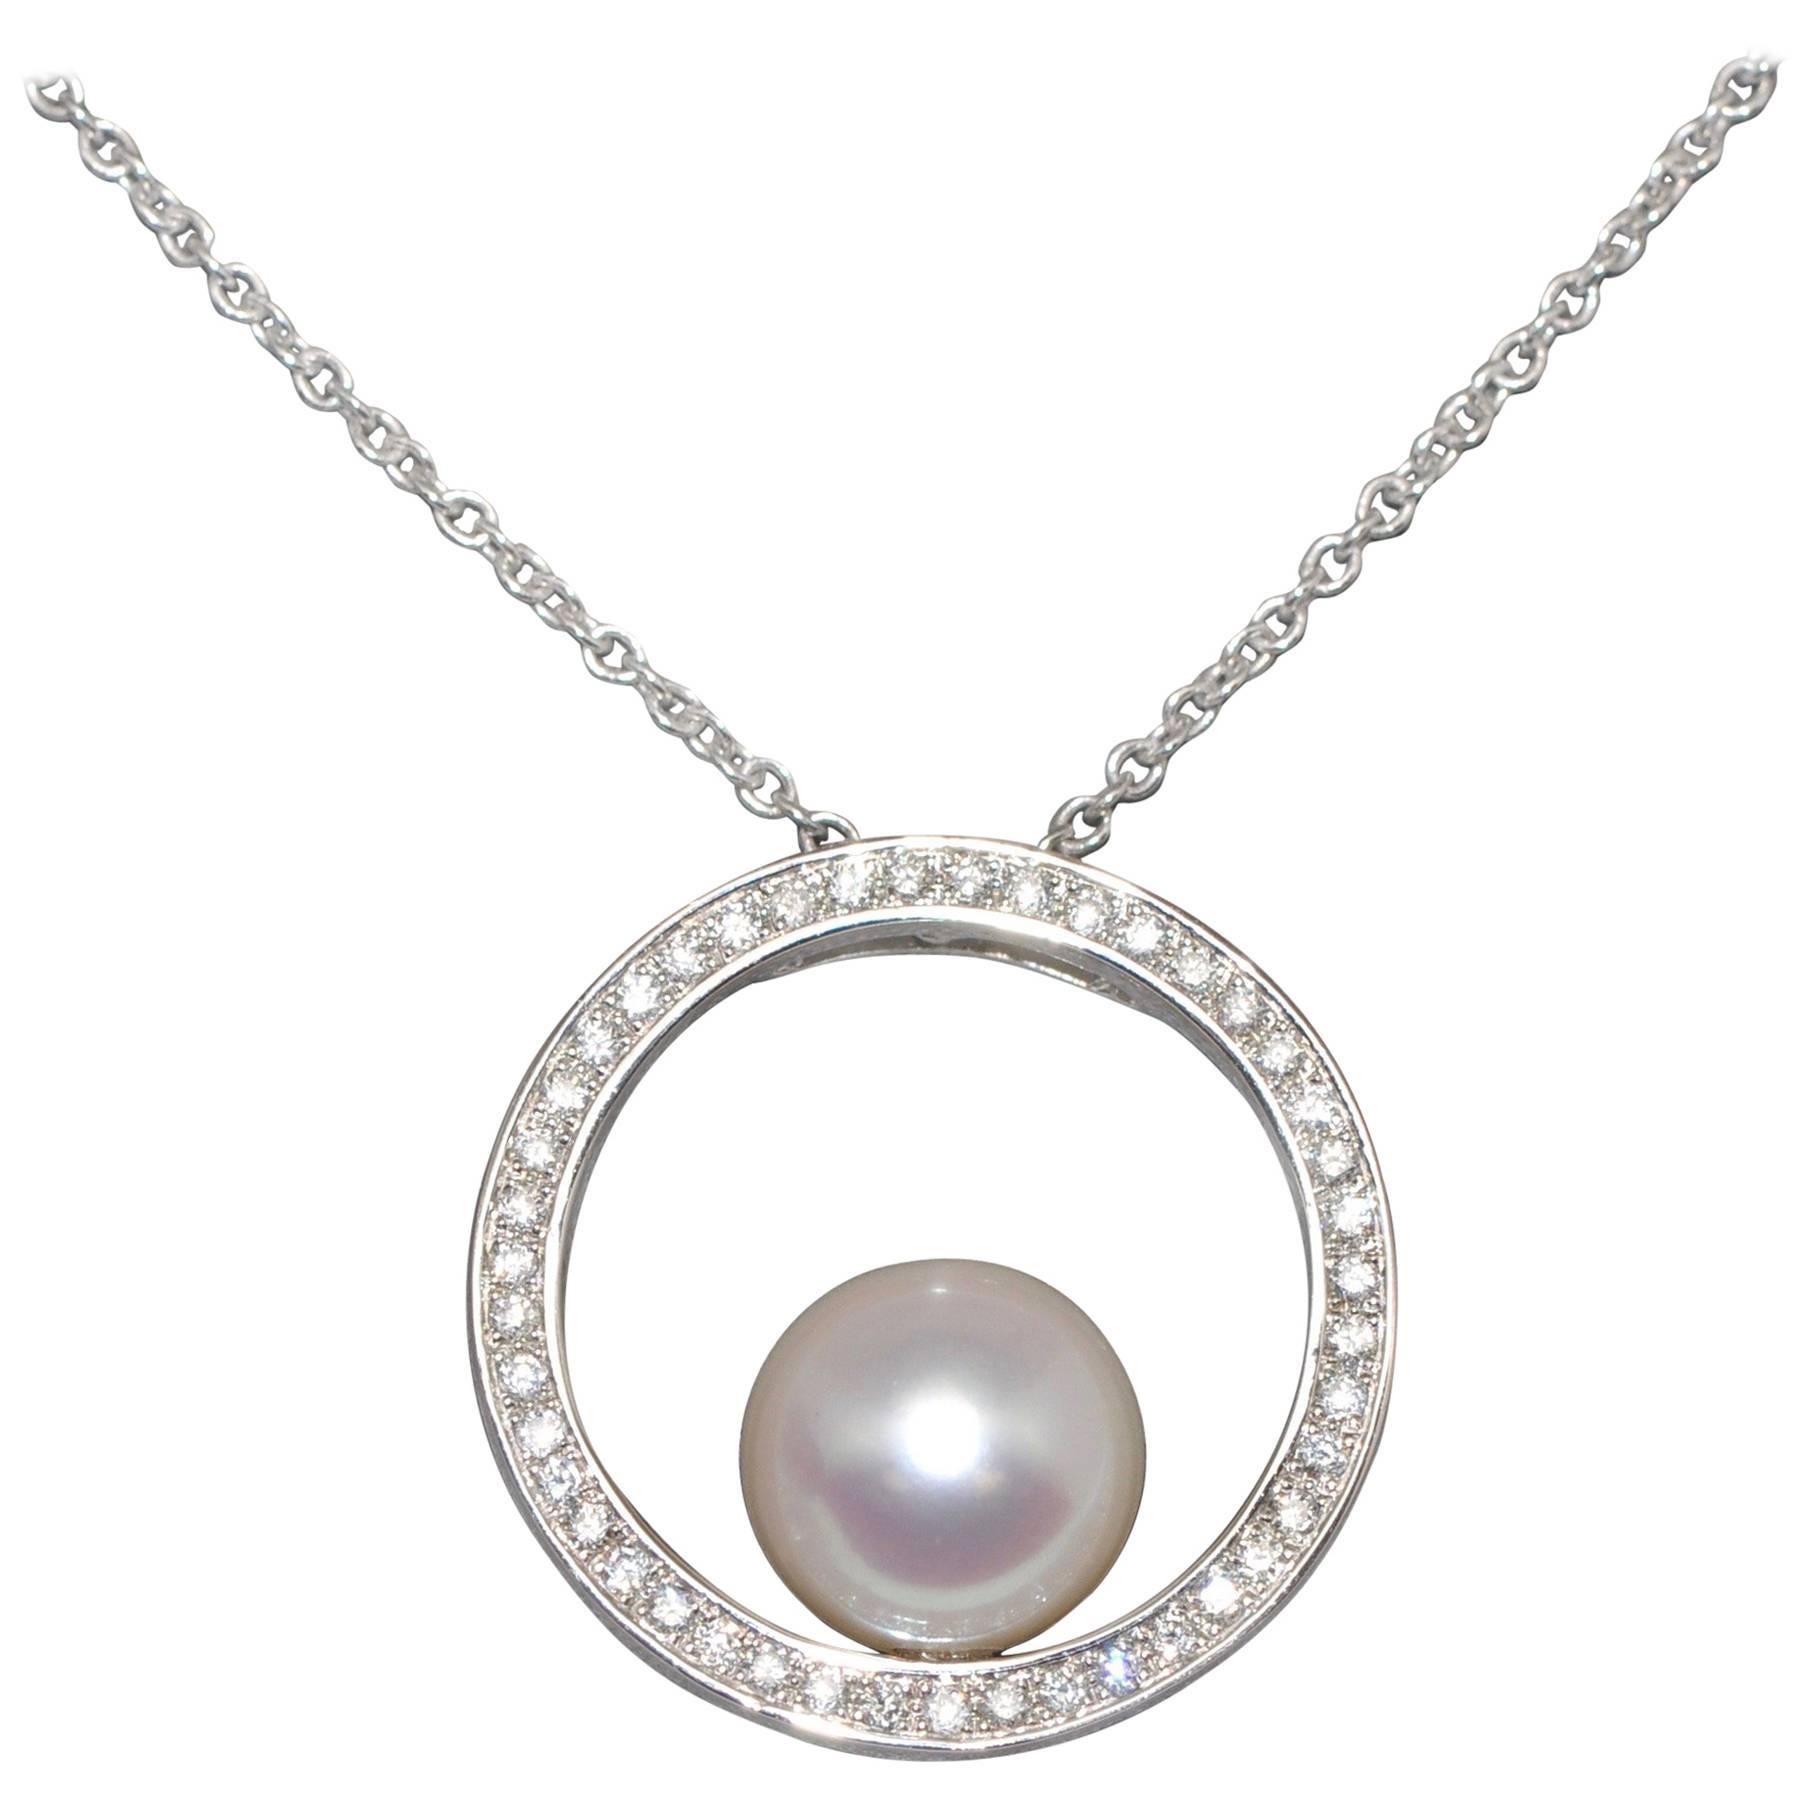 Collier pendentif en or blanc 18 carats avec perles de culture et diamants blancs